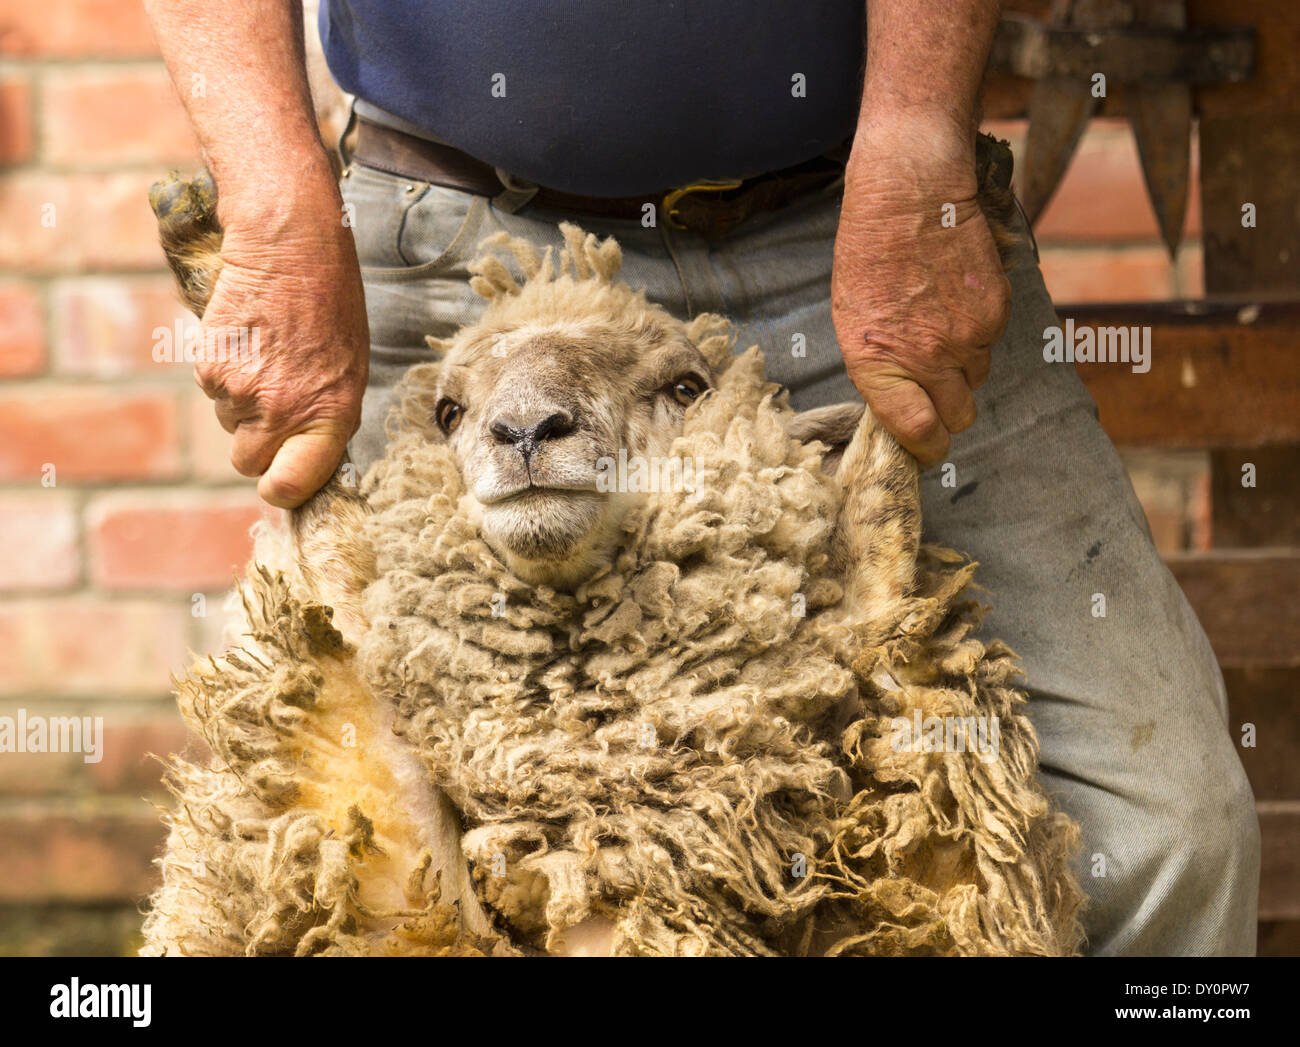 Schafschur, New Zealand - Schäfer hält ein großes Schaf durch seine Beine vor seiner Wolle Scheren Stockfoto